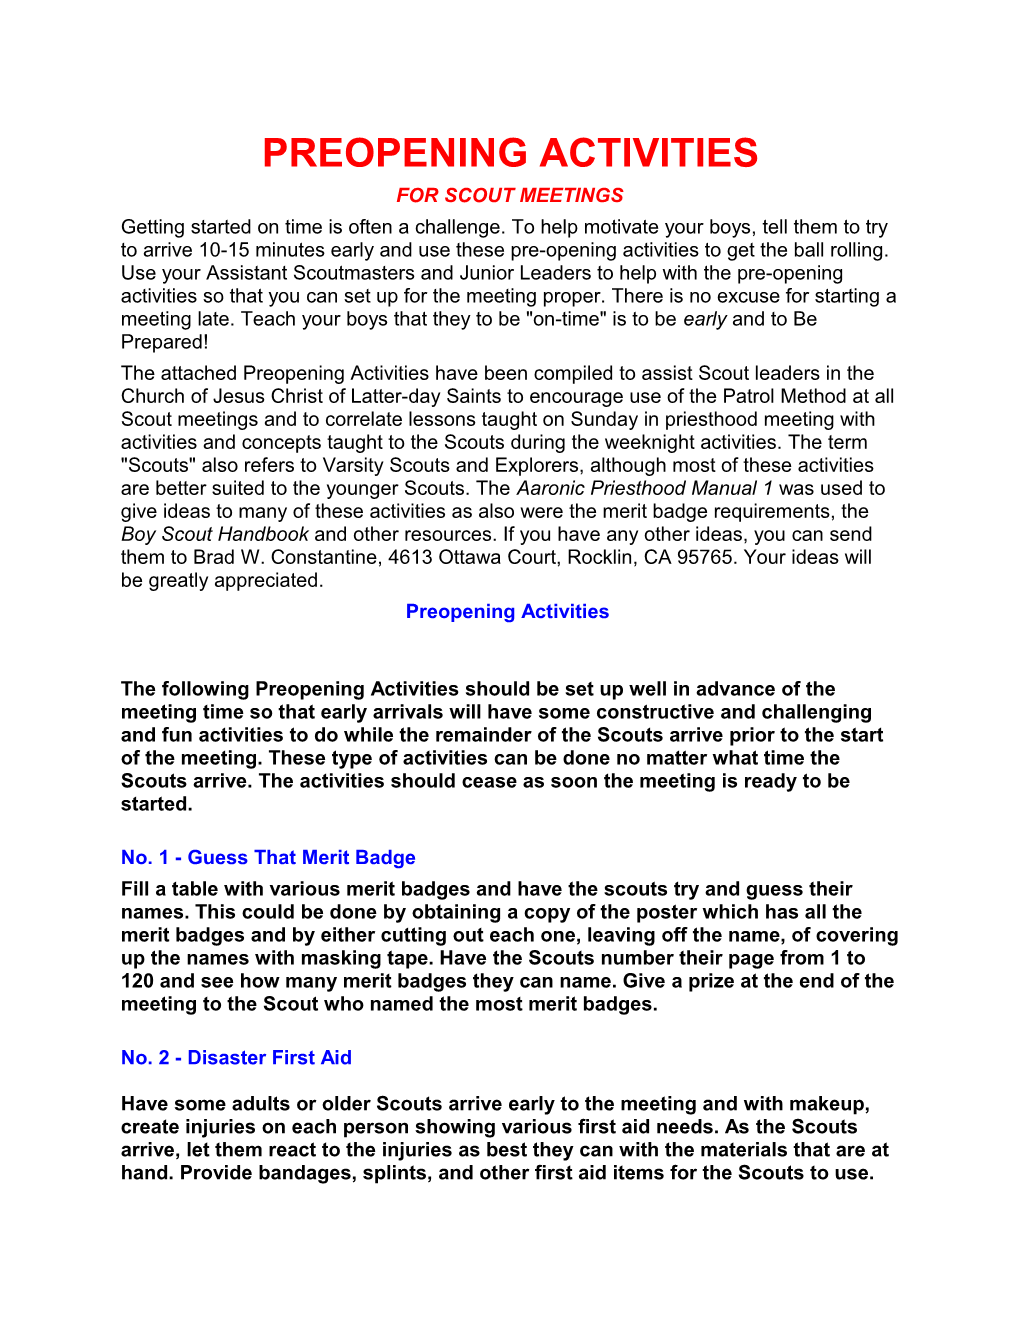 Preopening Activities